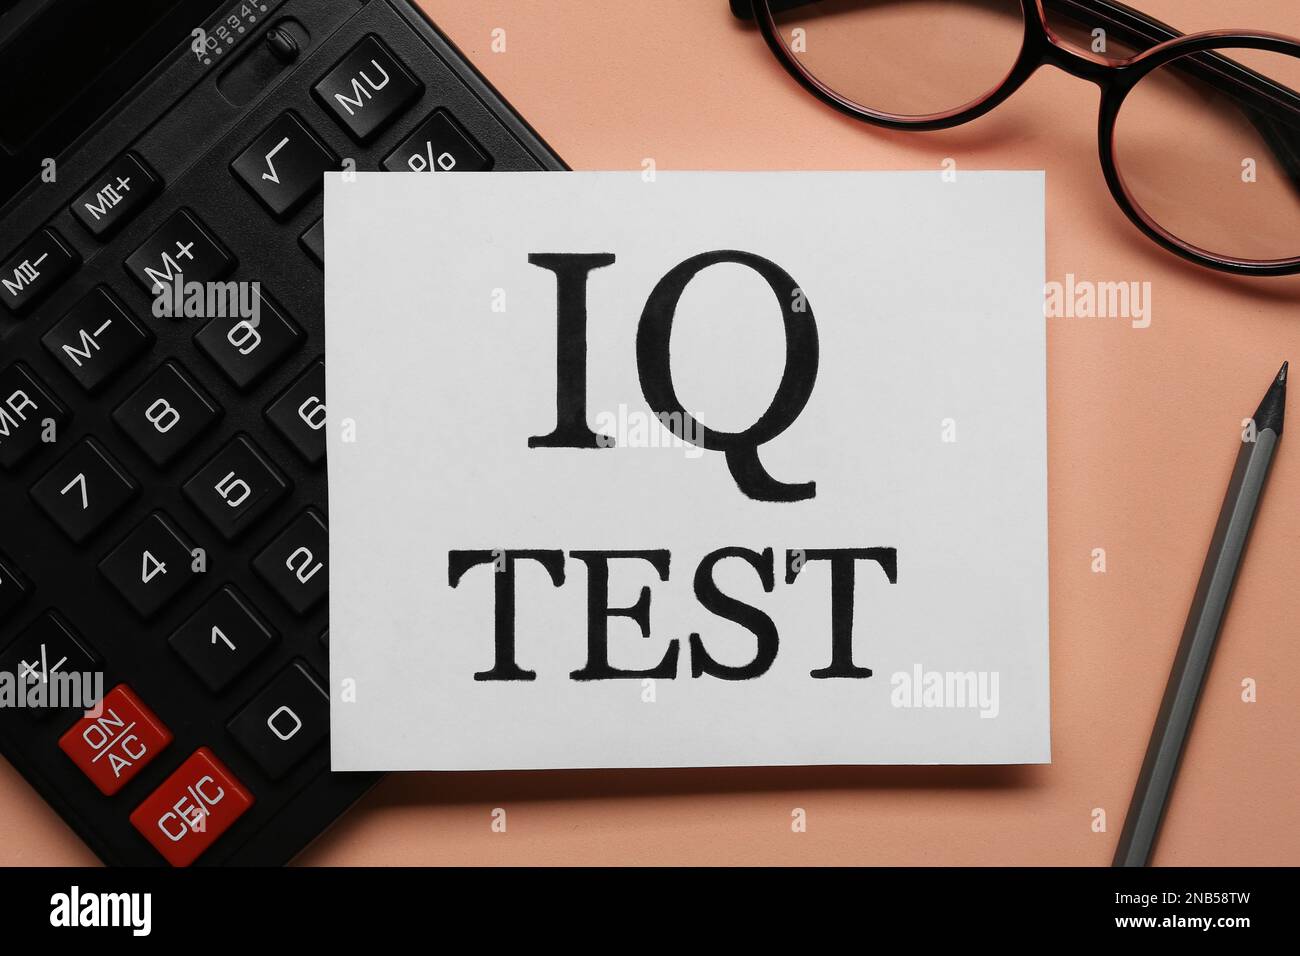 Nota con texto IQ Test, calculadora, gafas y lápiz sobre fondo coral, plano  lay Fotografía de stock - Alamy